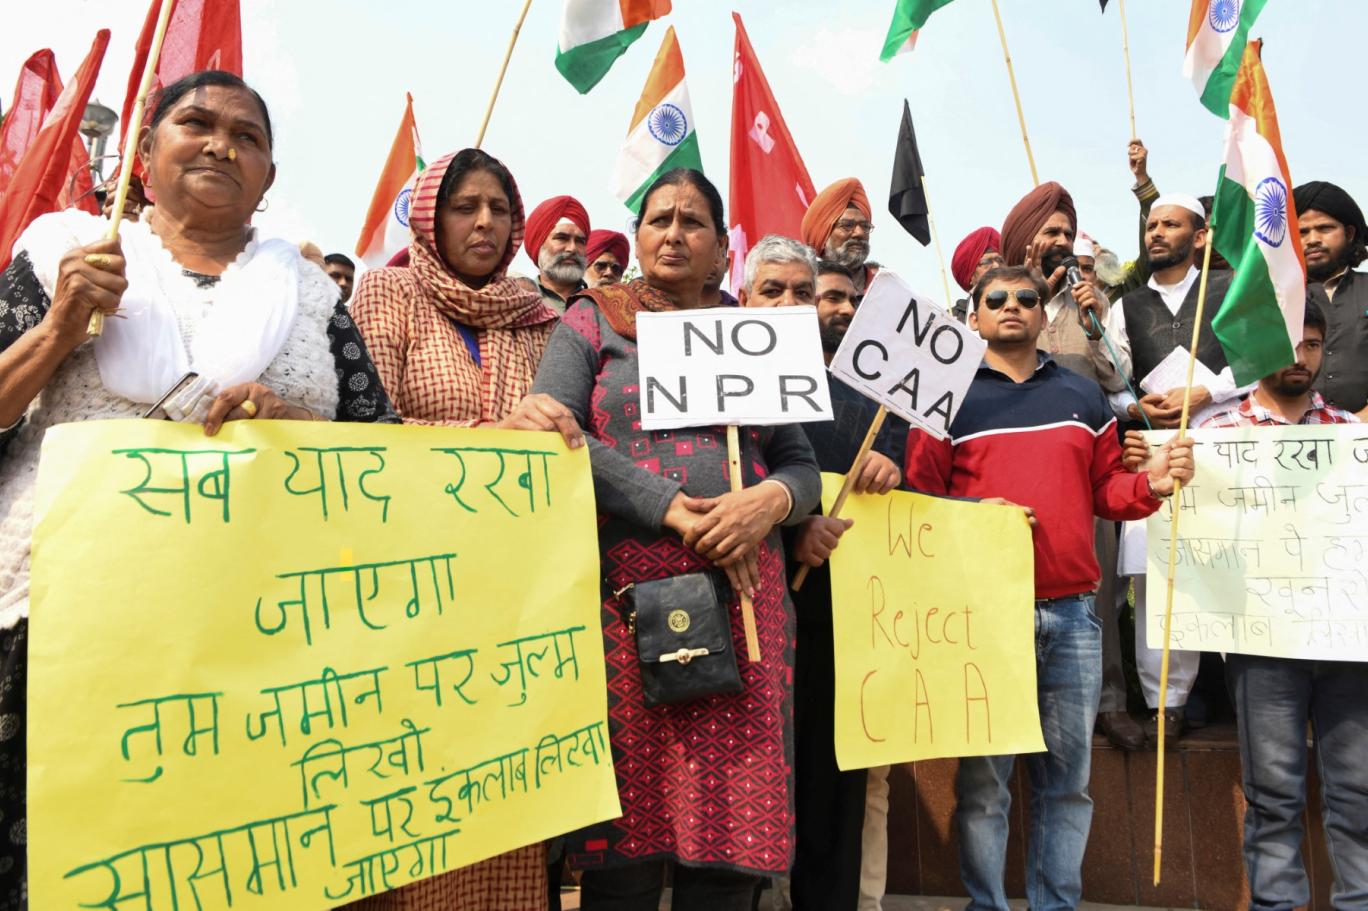 مسلمانوں کے خلاف امتیازی انڈین شہریت کے قانون پر احتجاج | Independent Urdu